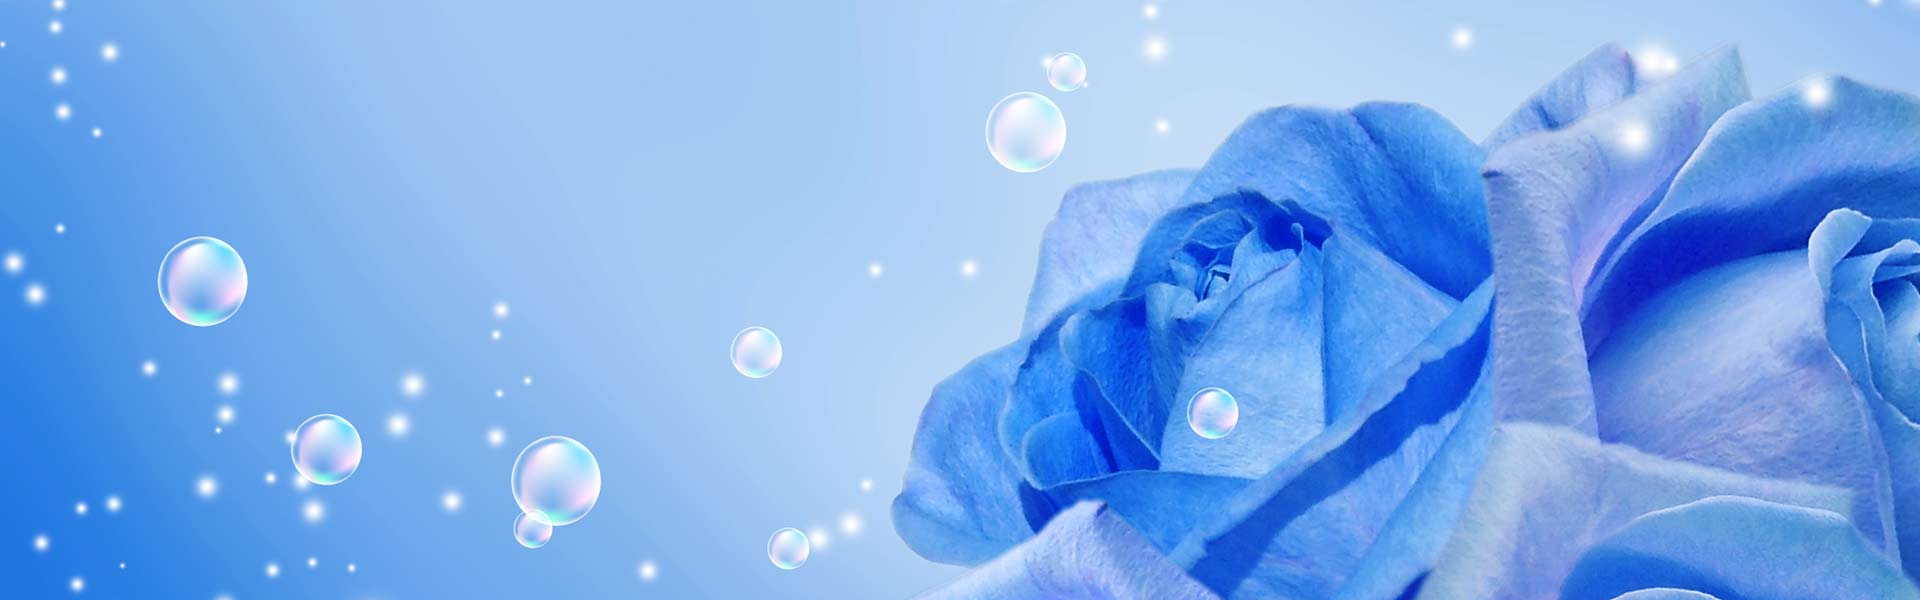 Blue Rose image banner